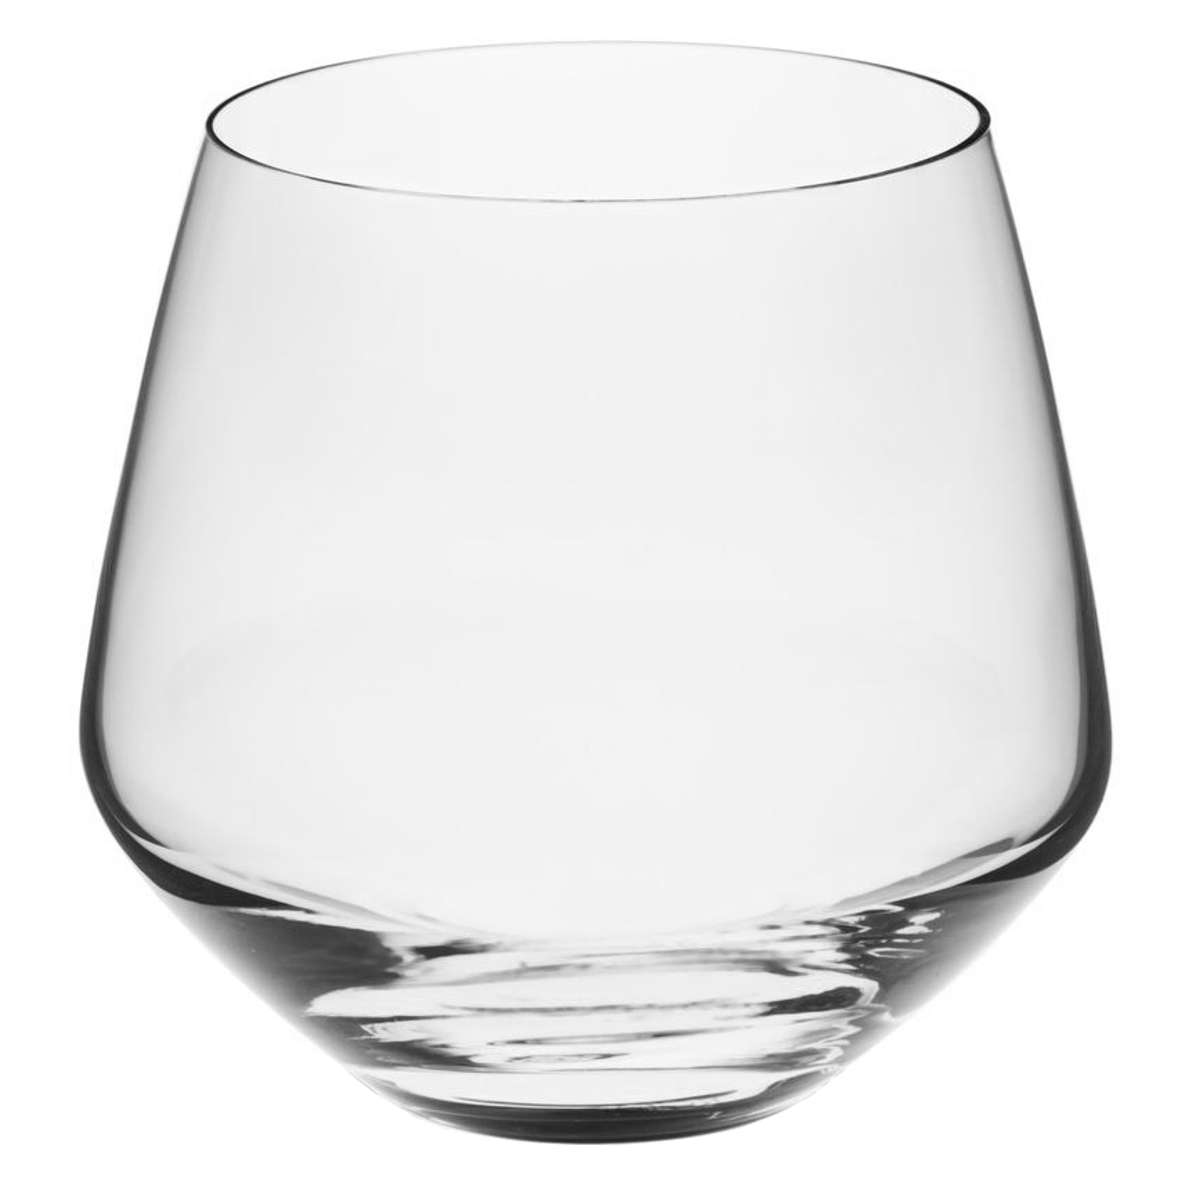 Rona Double Old Fashioned Glas, 390ml Fassungsvermögen